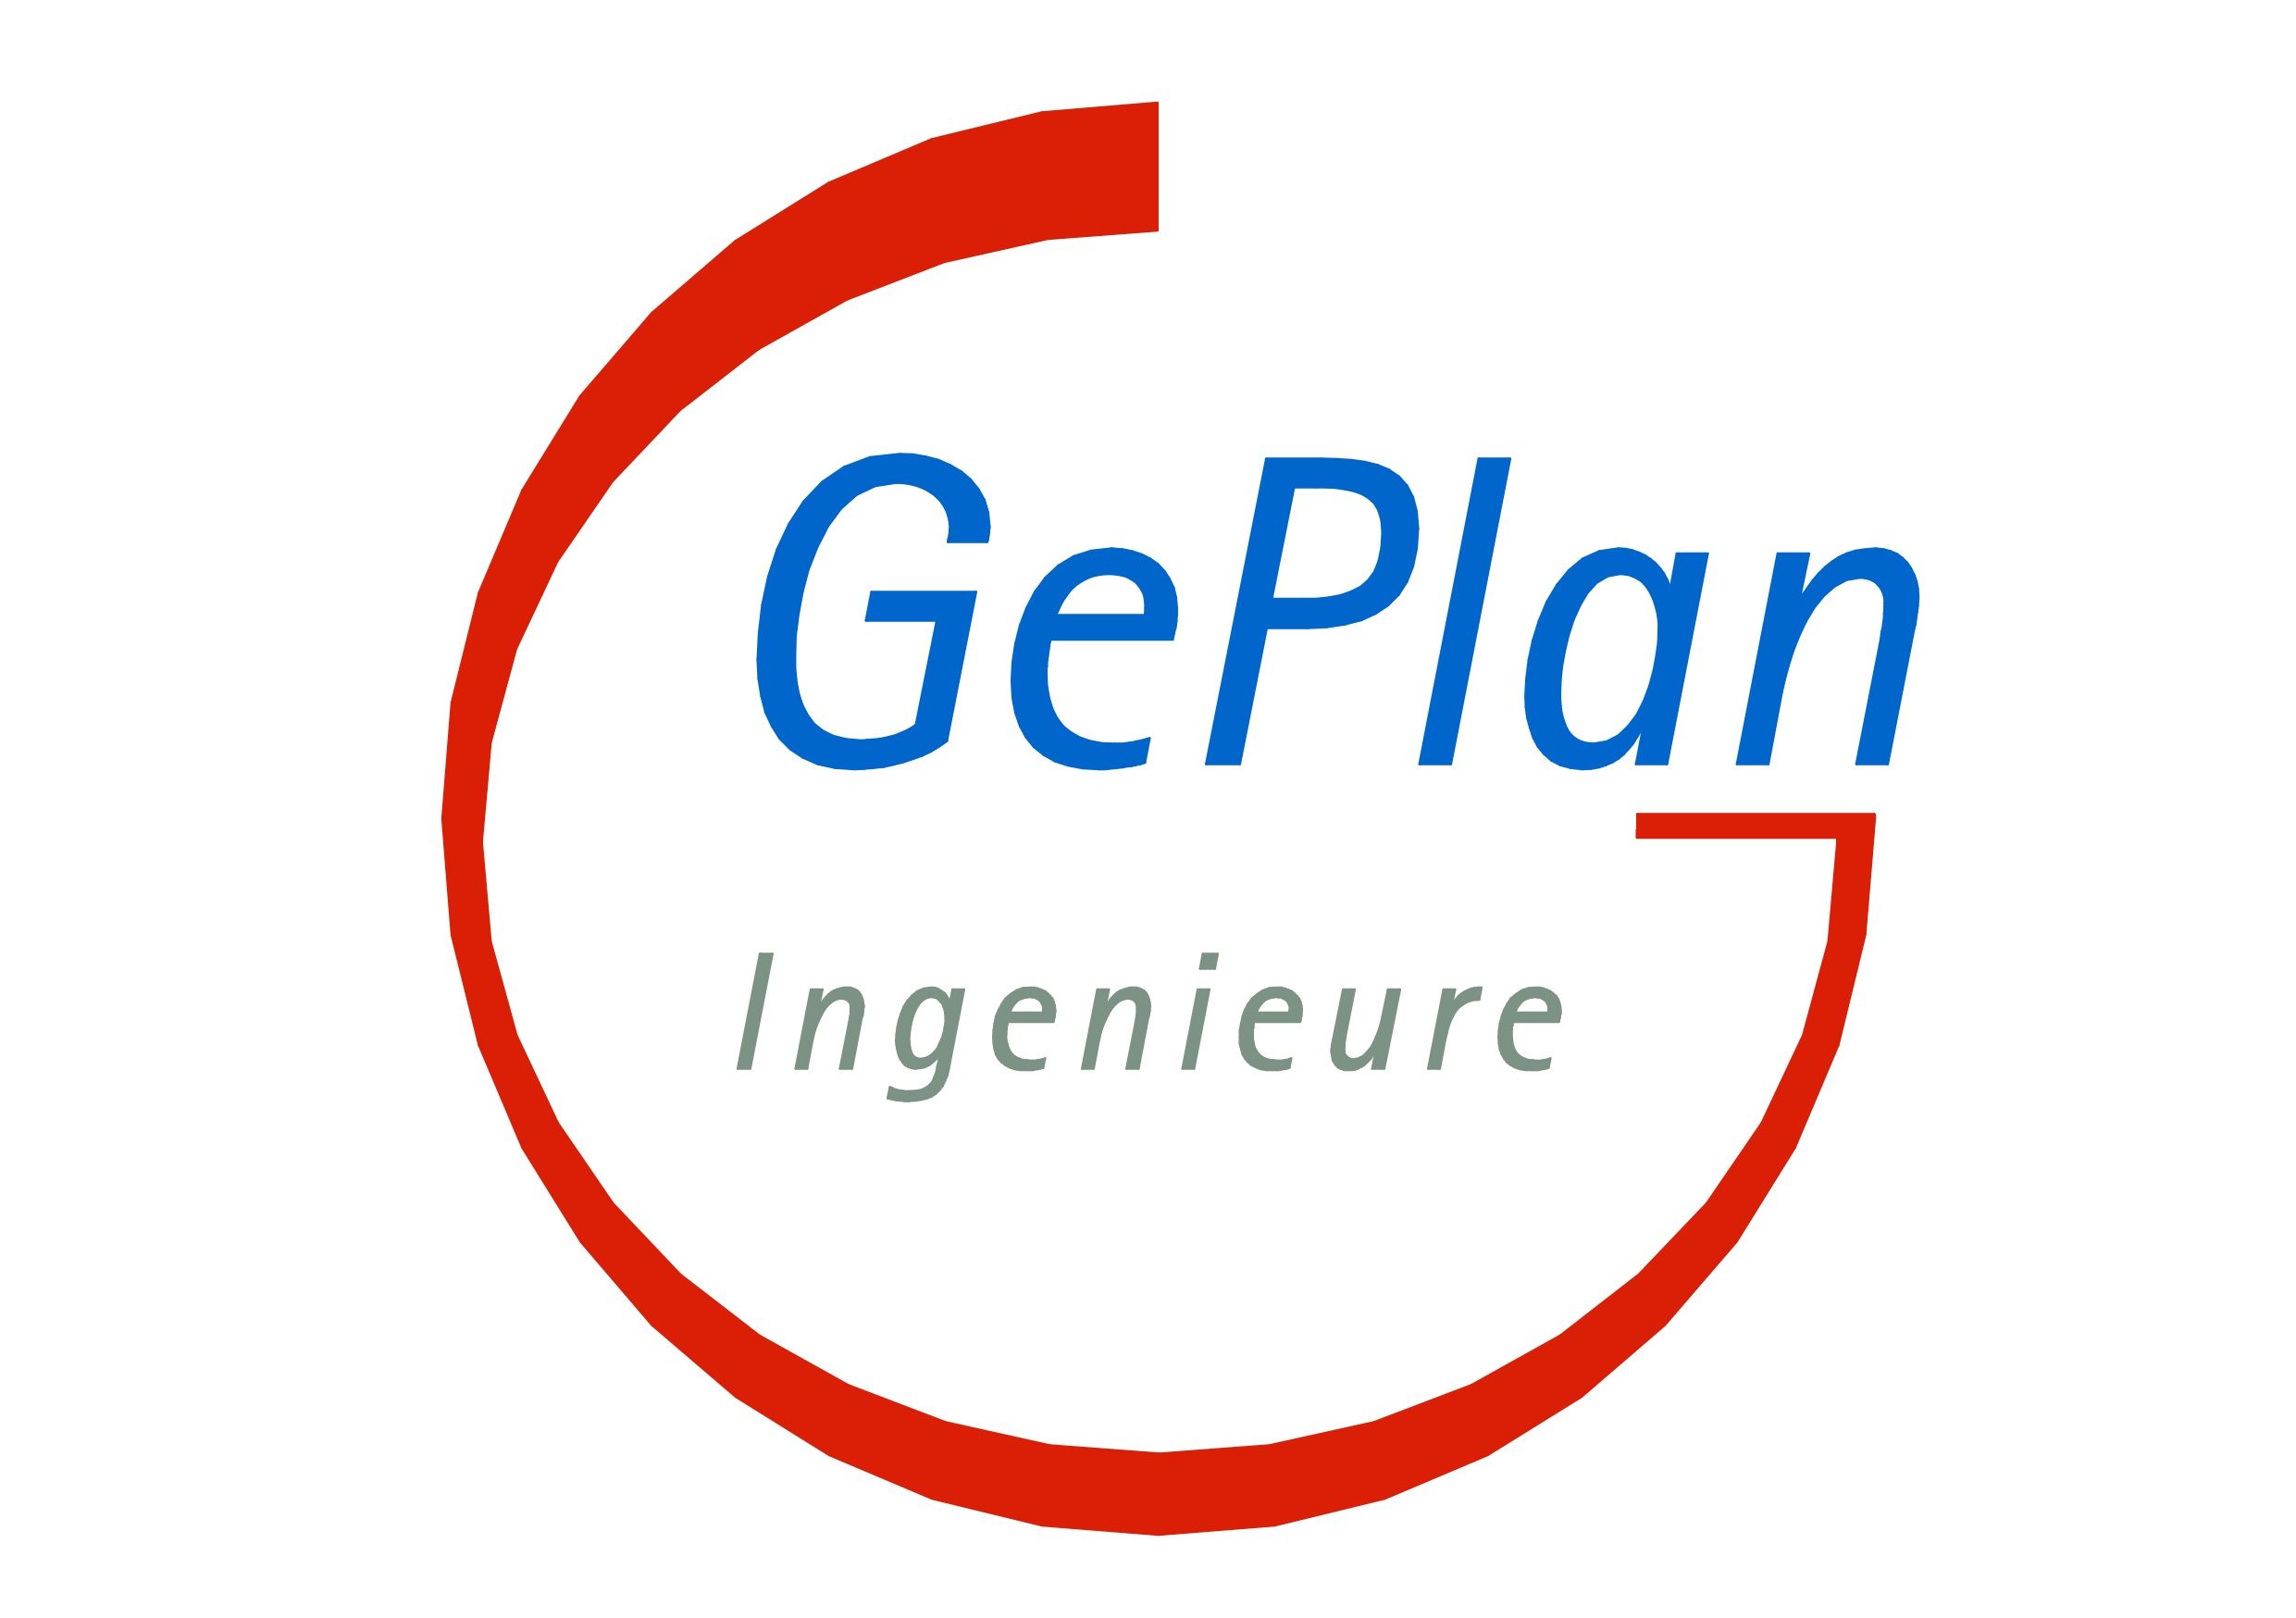 GePlan Ingenieure GmbH & Co KG